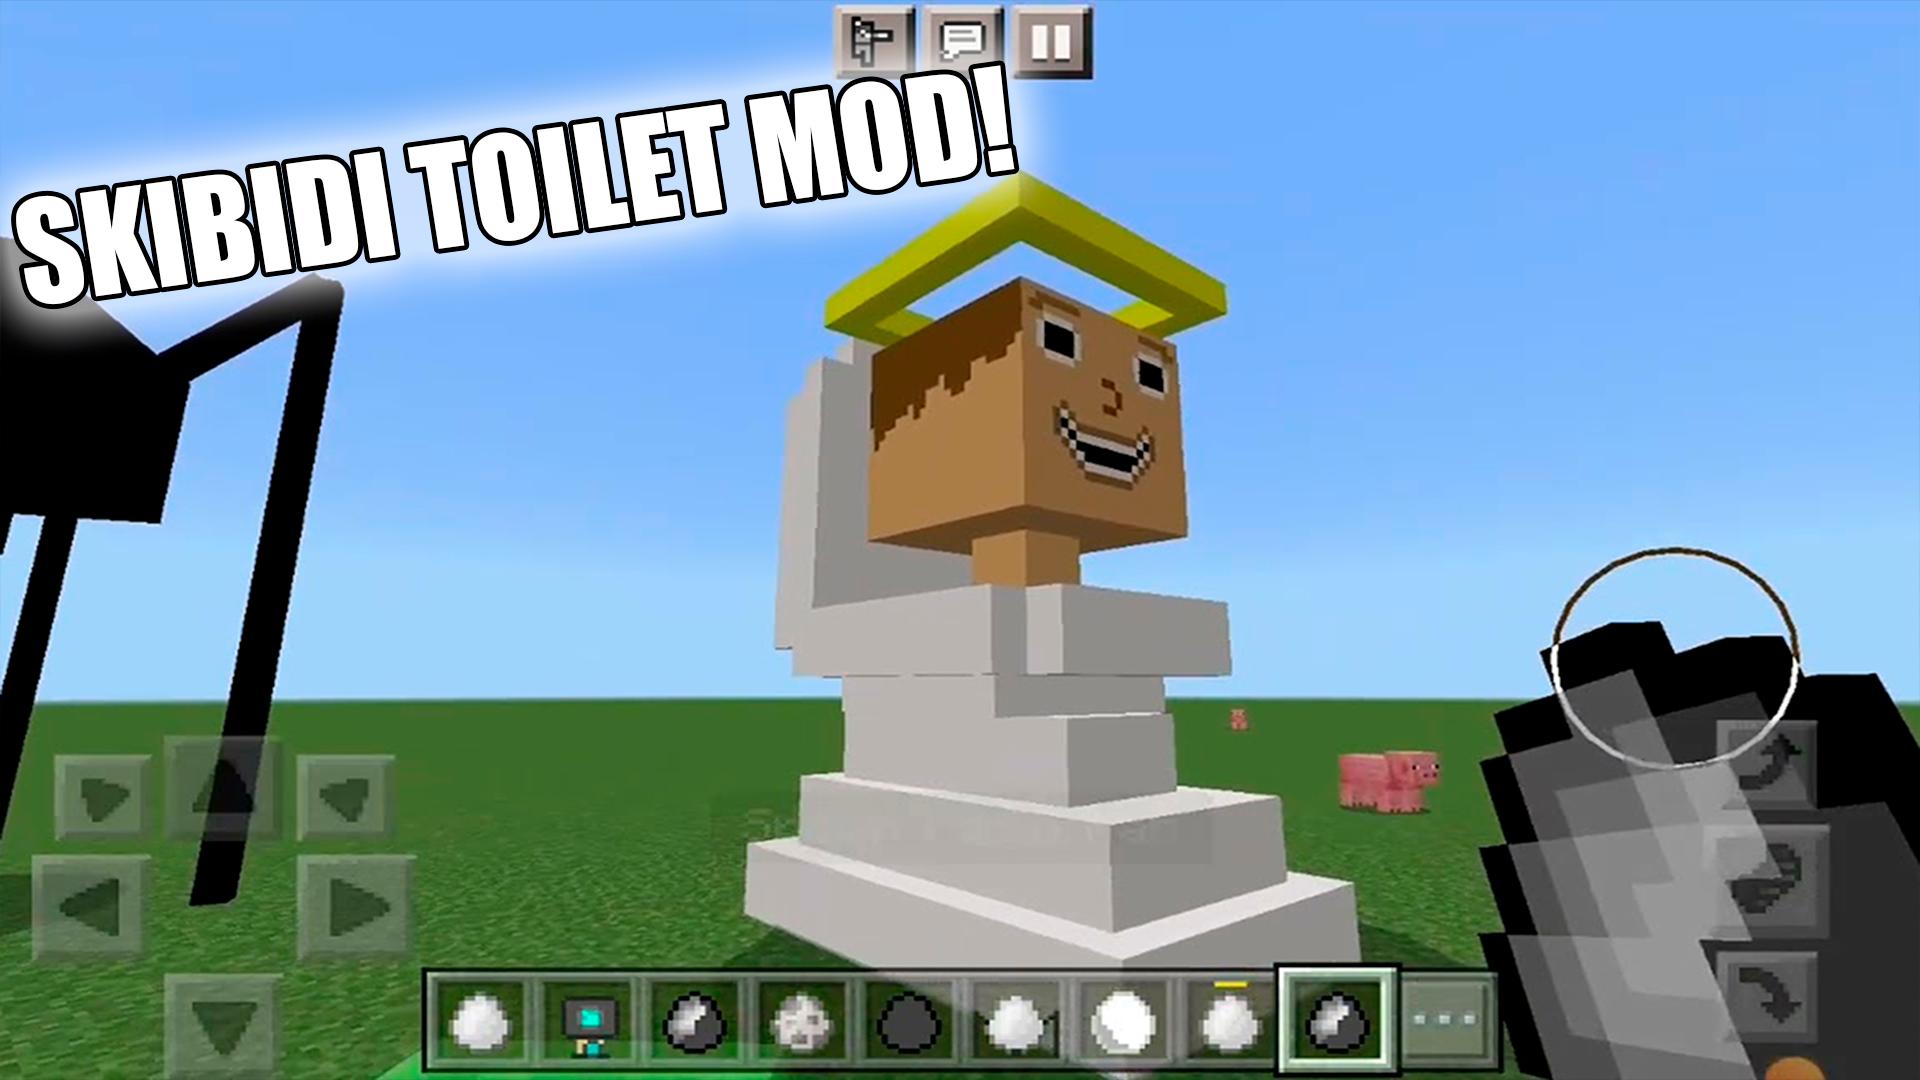 Мод на скибиди туалет в майнкрафт. Скин скибиди туалет для майнкрафт. ТВ Minecraft картинки скибиди туалетов 0.3. Скибиди туалеты мод майнкрафт на андроид